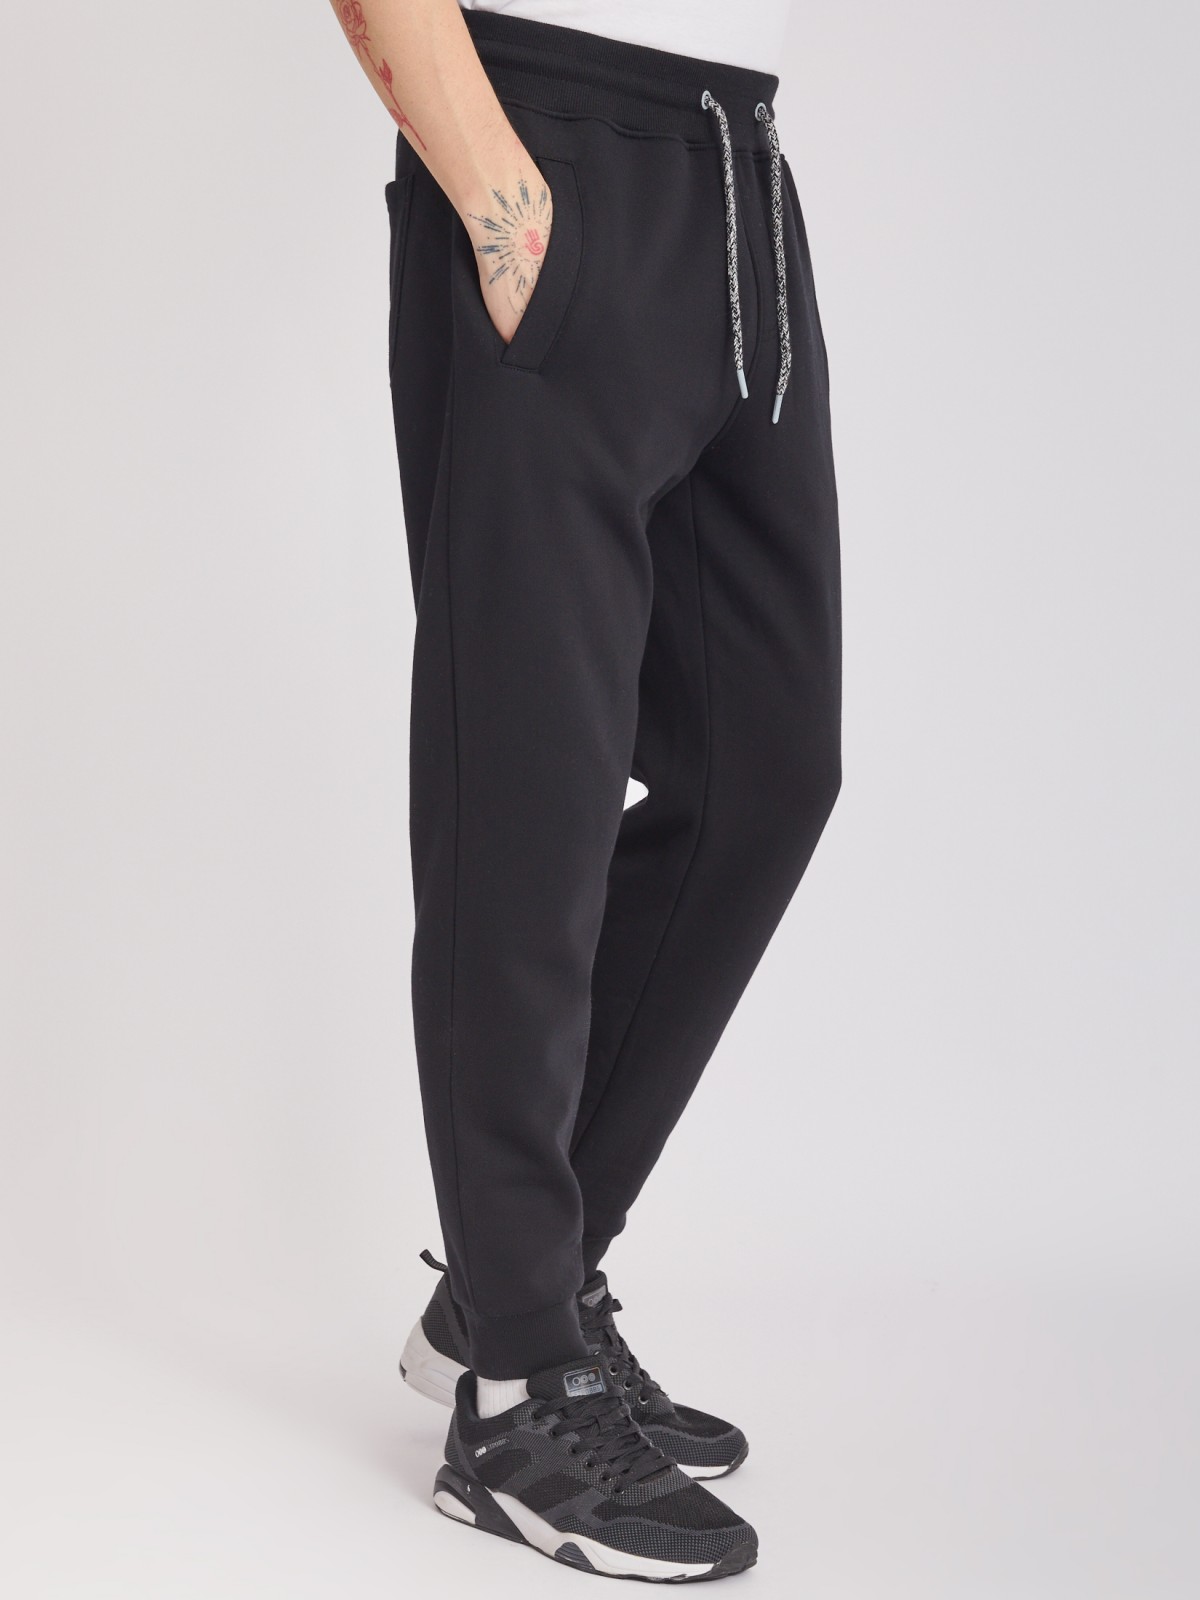 Утеплённые трикотажные брюки-джоггеры в спортивном стиле zolla 213337675022, цвет черный, размер M - фото 3